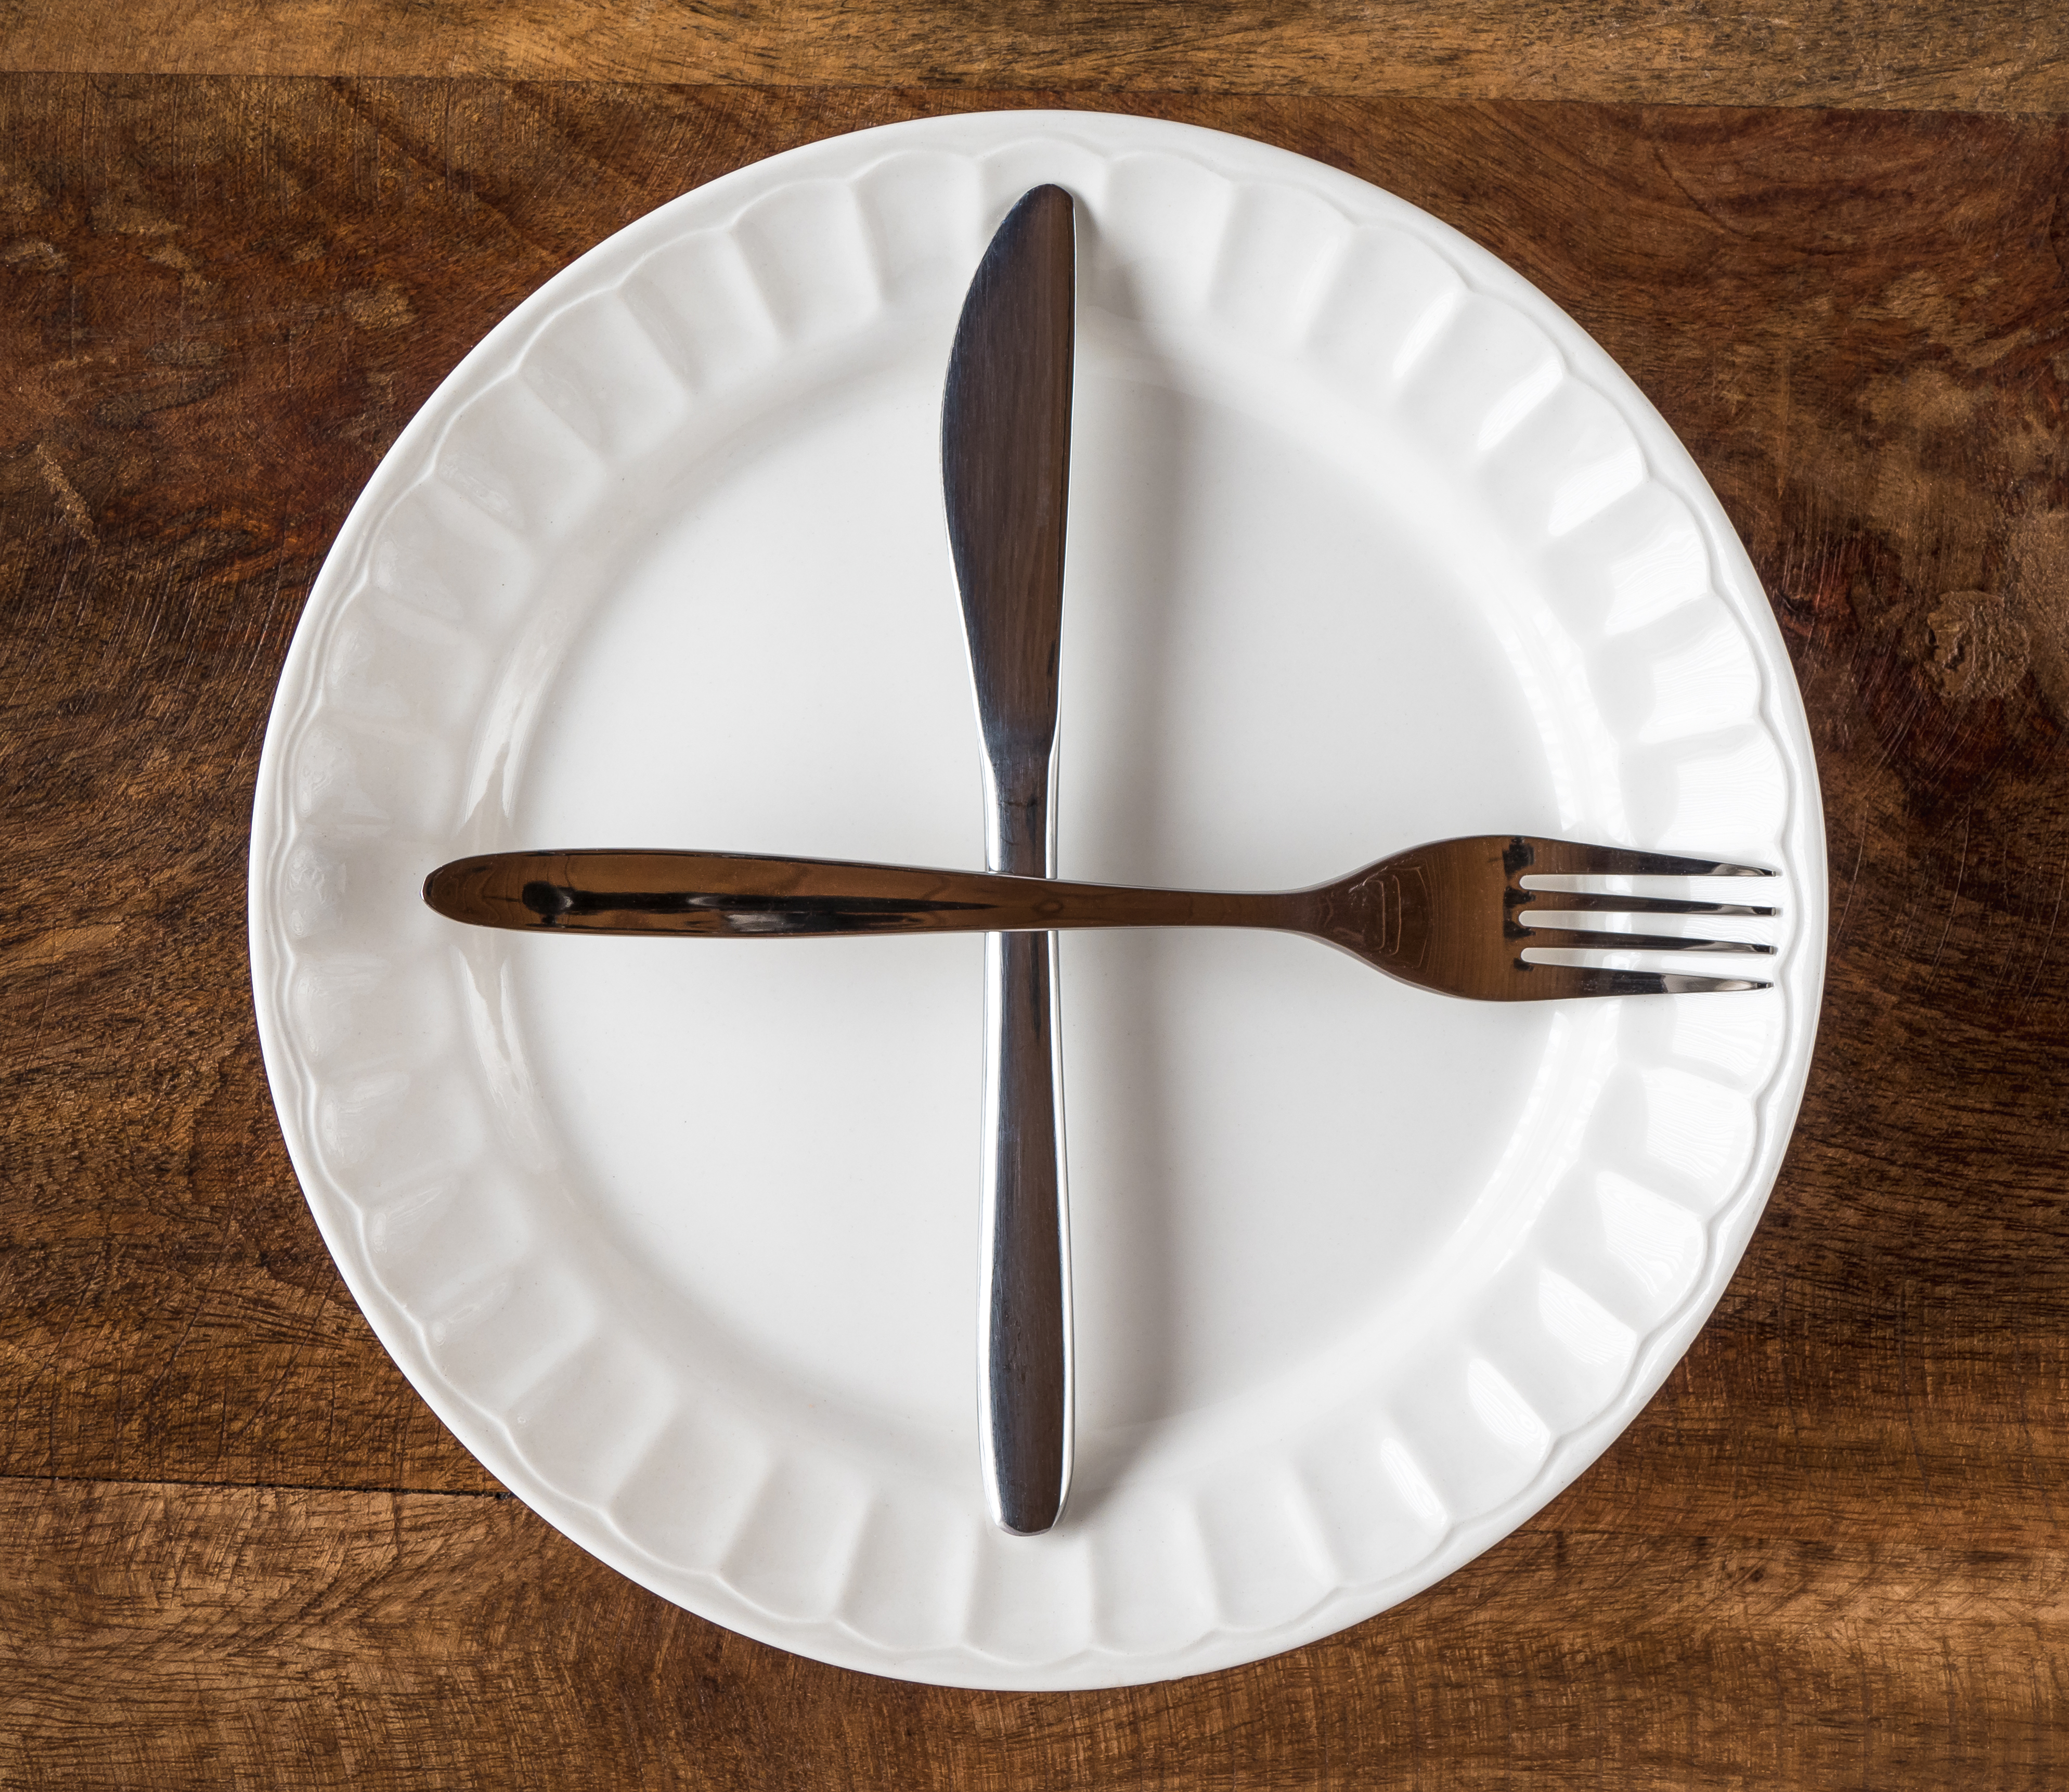 Fork and butterknife on plate